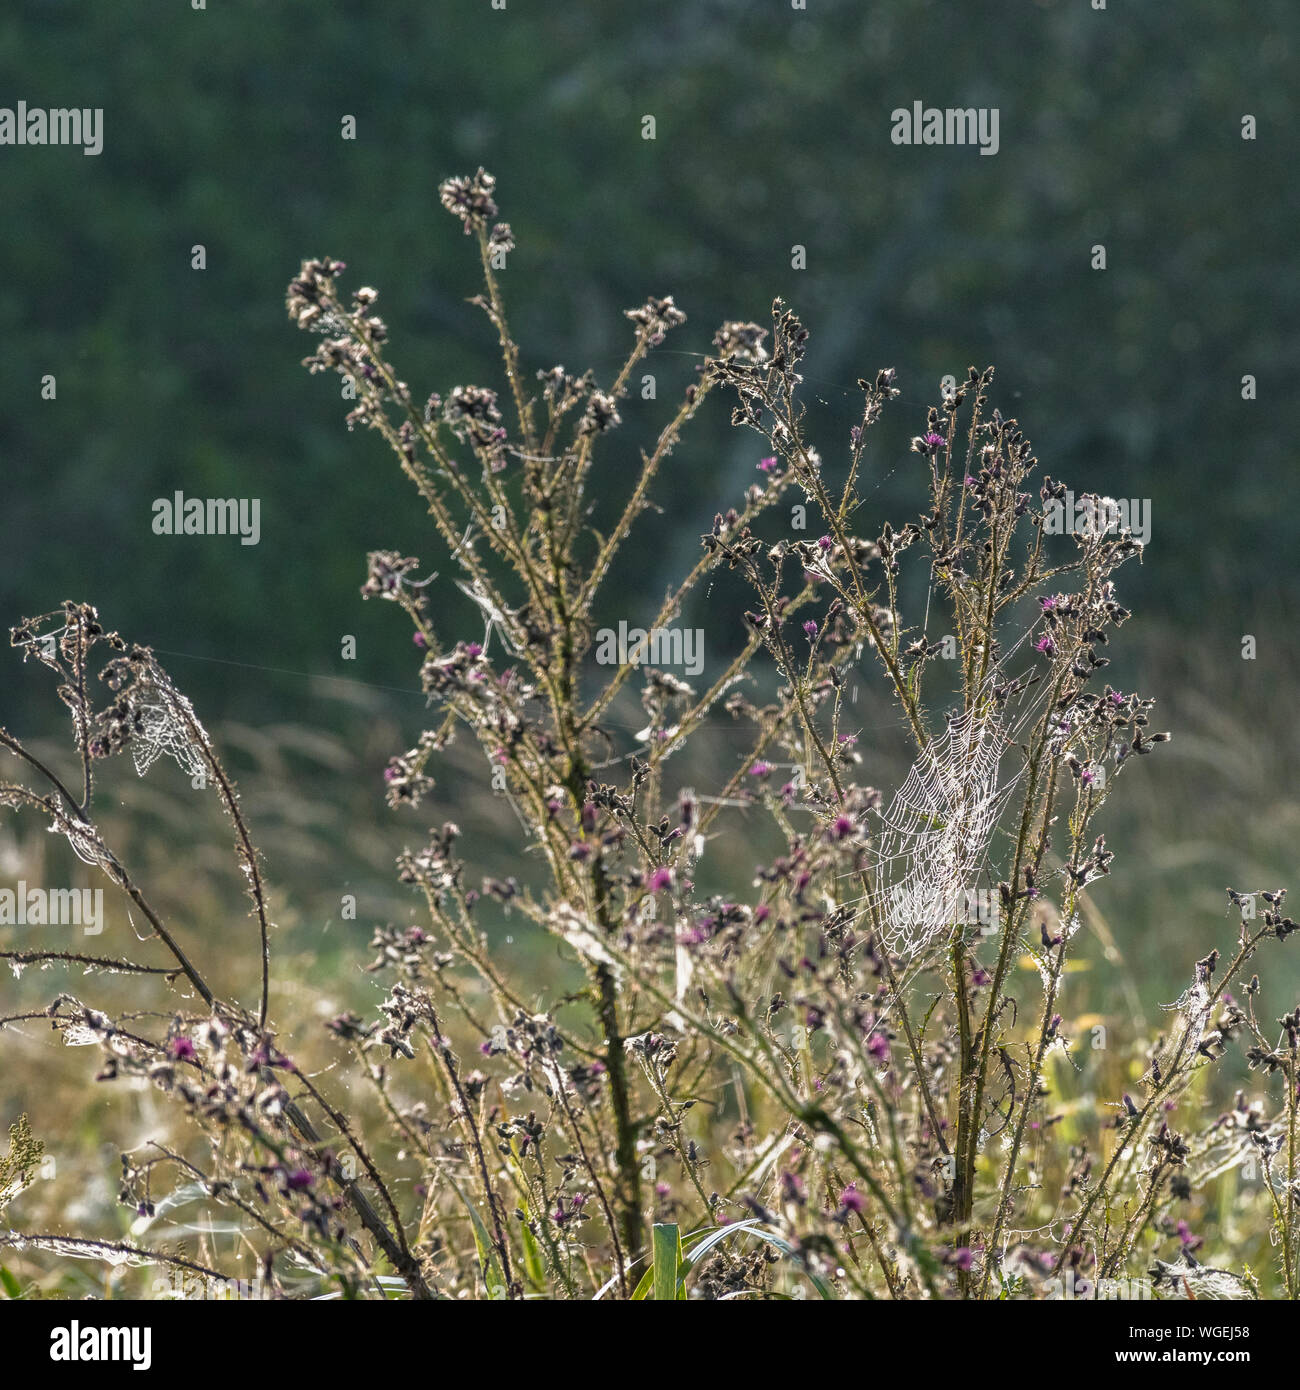 Am Ende der Saison Marsh Thistle/Cirsium palustre am Morgen Sonnenschein und sonnendurchfluteten Tautropfen in Spinnennetz (RHS) Stockfoto